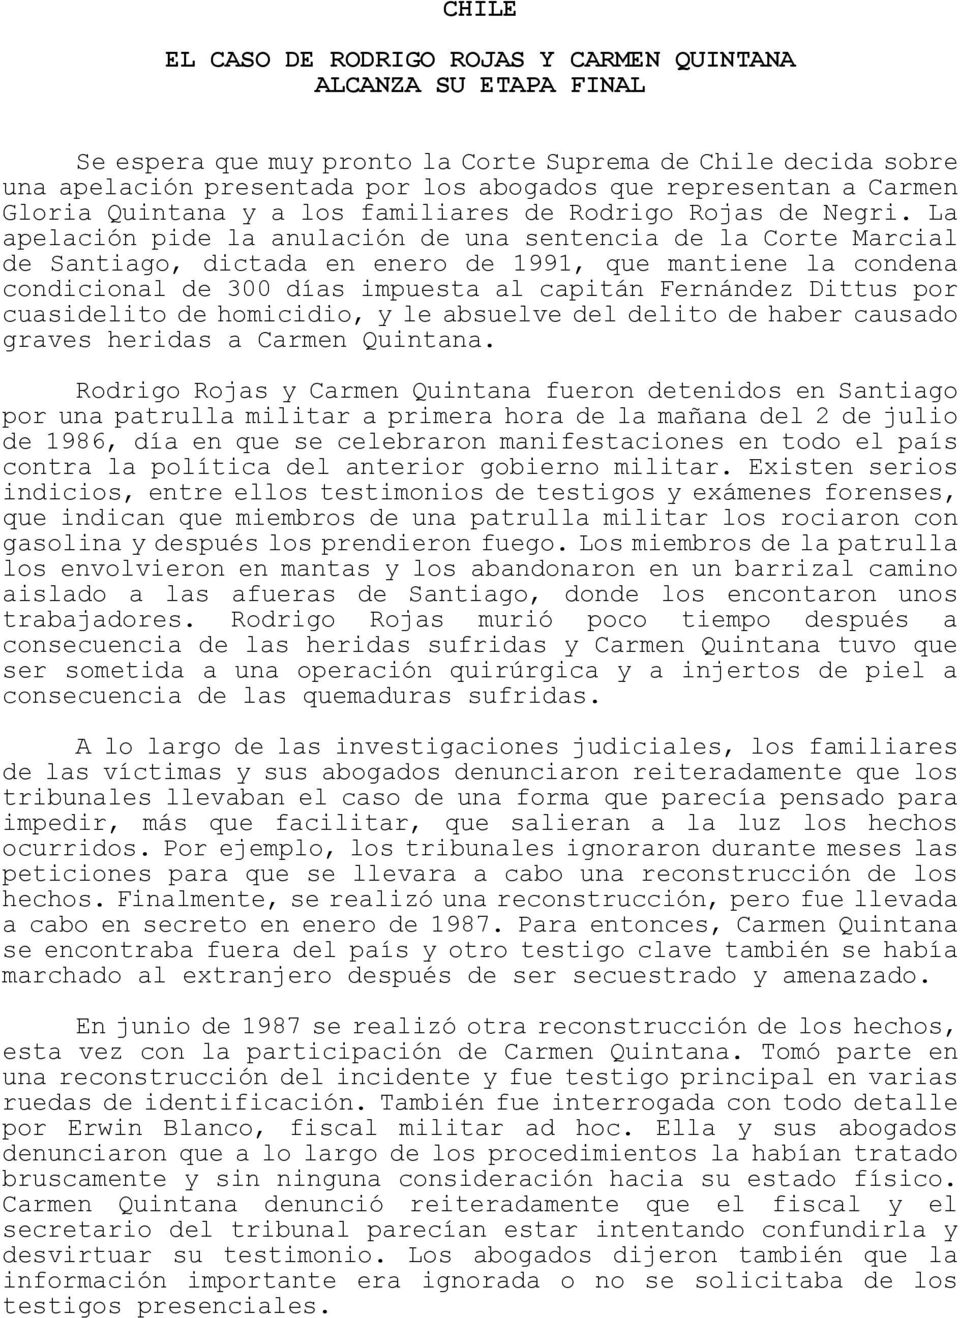 La apelación pide la anulación de una sentencia de la Corte Marcial de Santiago, dictada en enero de 1991, que mantiene la condena condicional de 300 días impuesta al capitán Fernández Dittus por